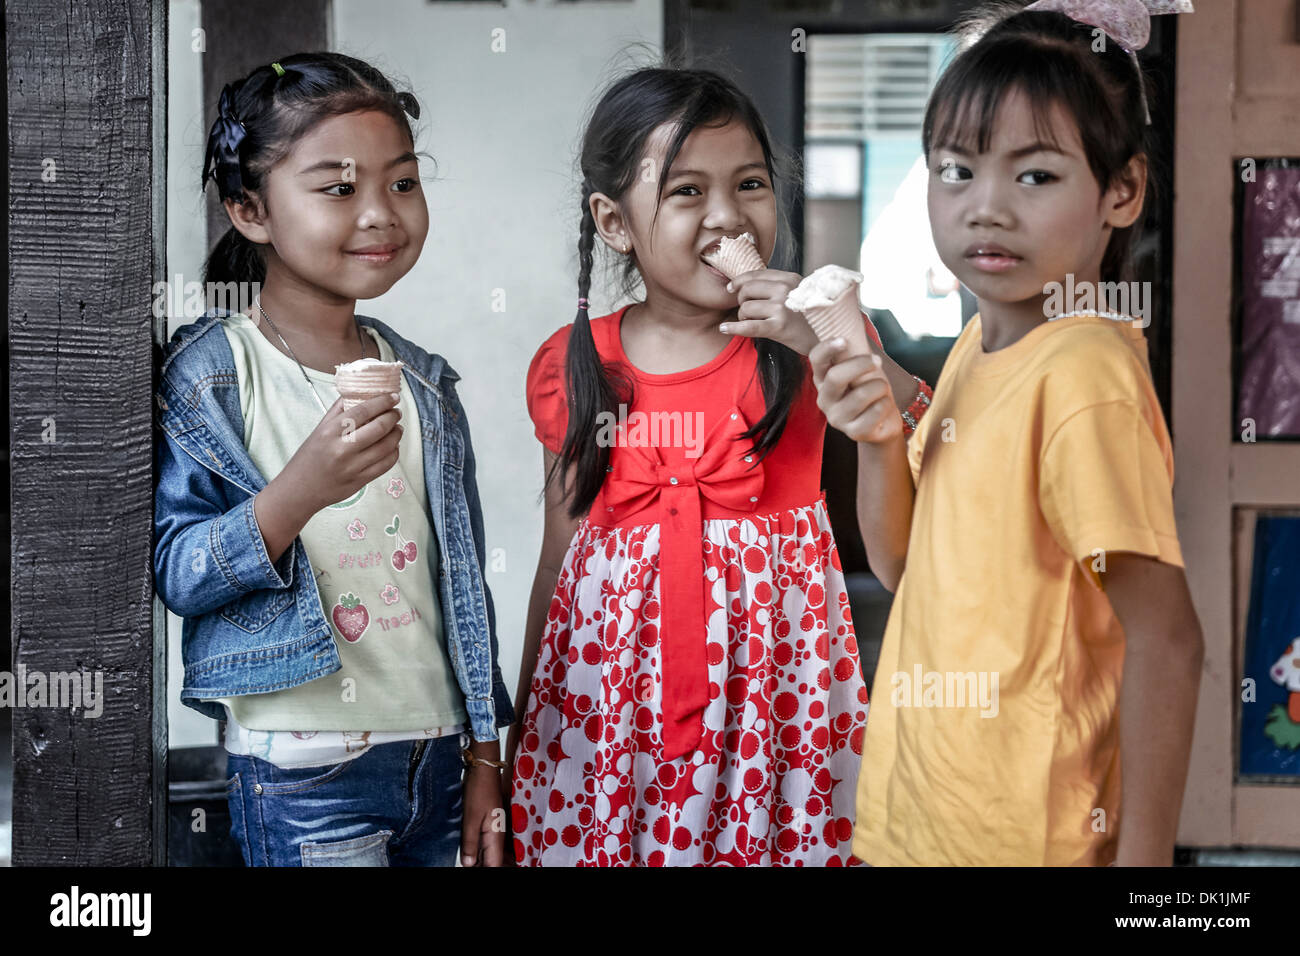 Les enfants mangent de la glace. Trois jeunes filles thaïlandaises qui mangent de la glace . Thaïlande S. E. Asie Banque D'Images